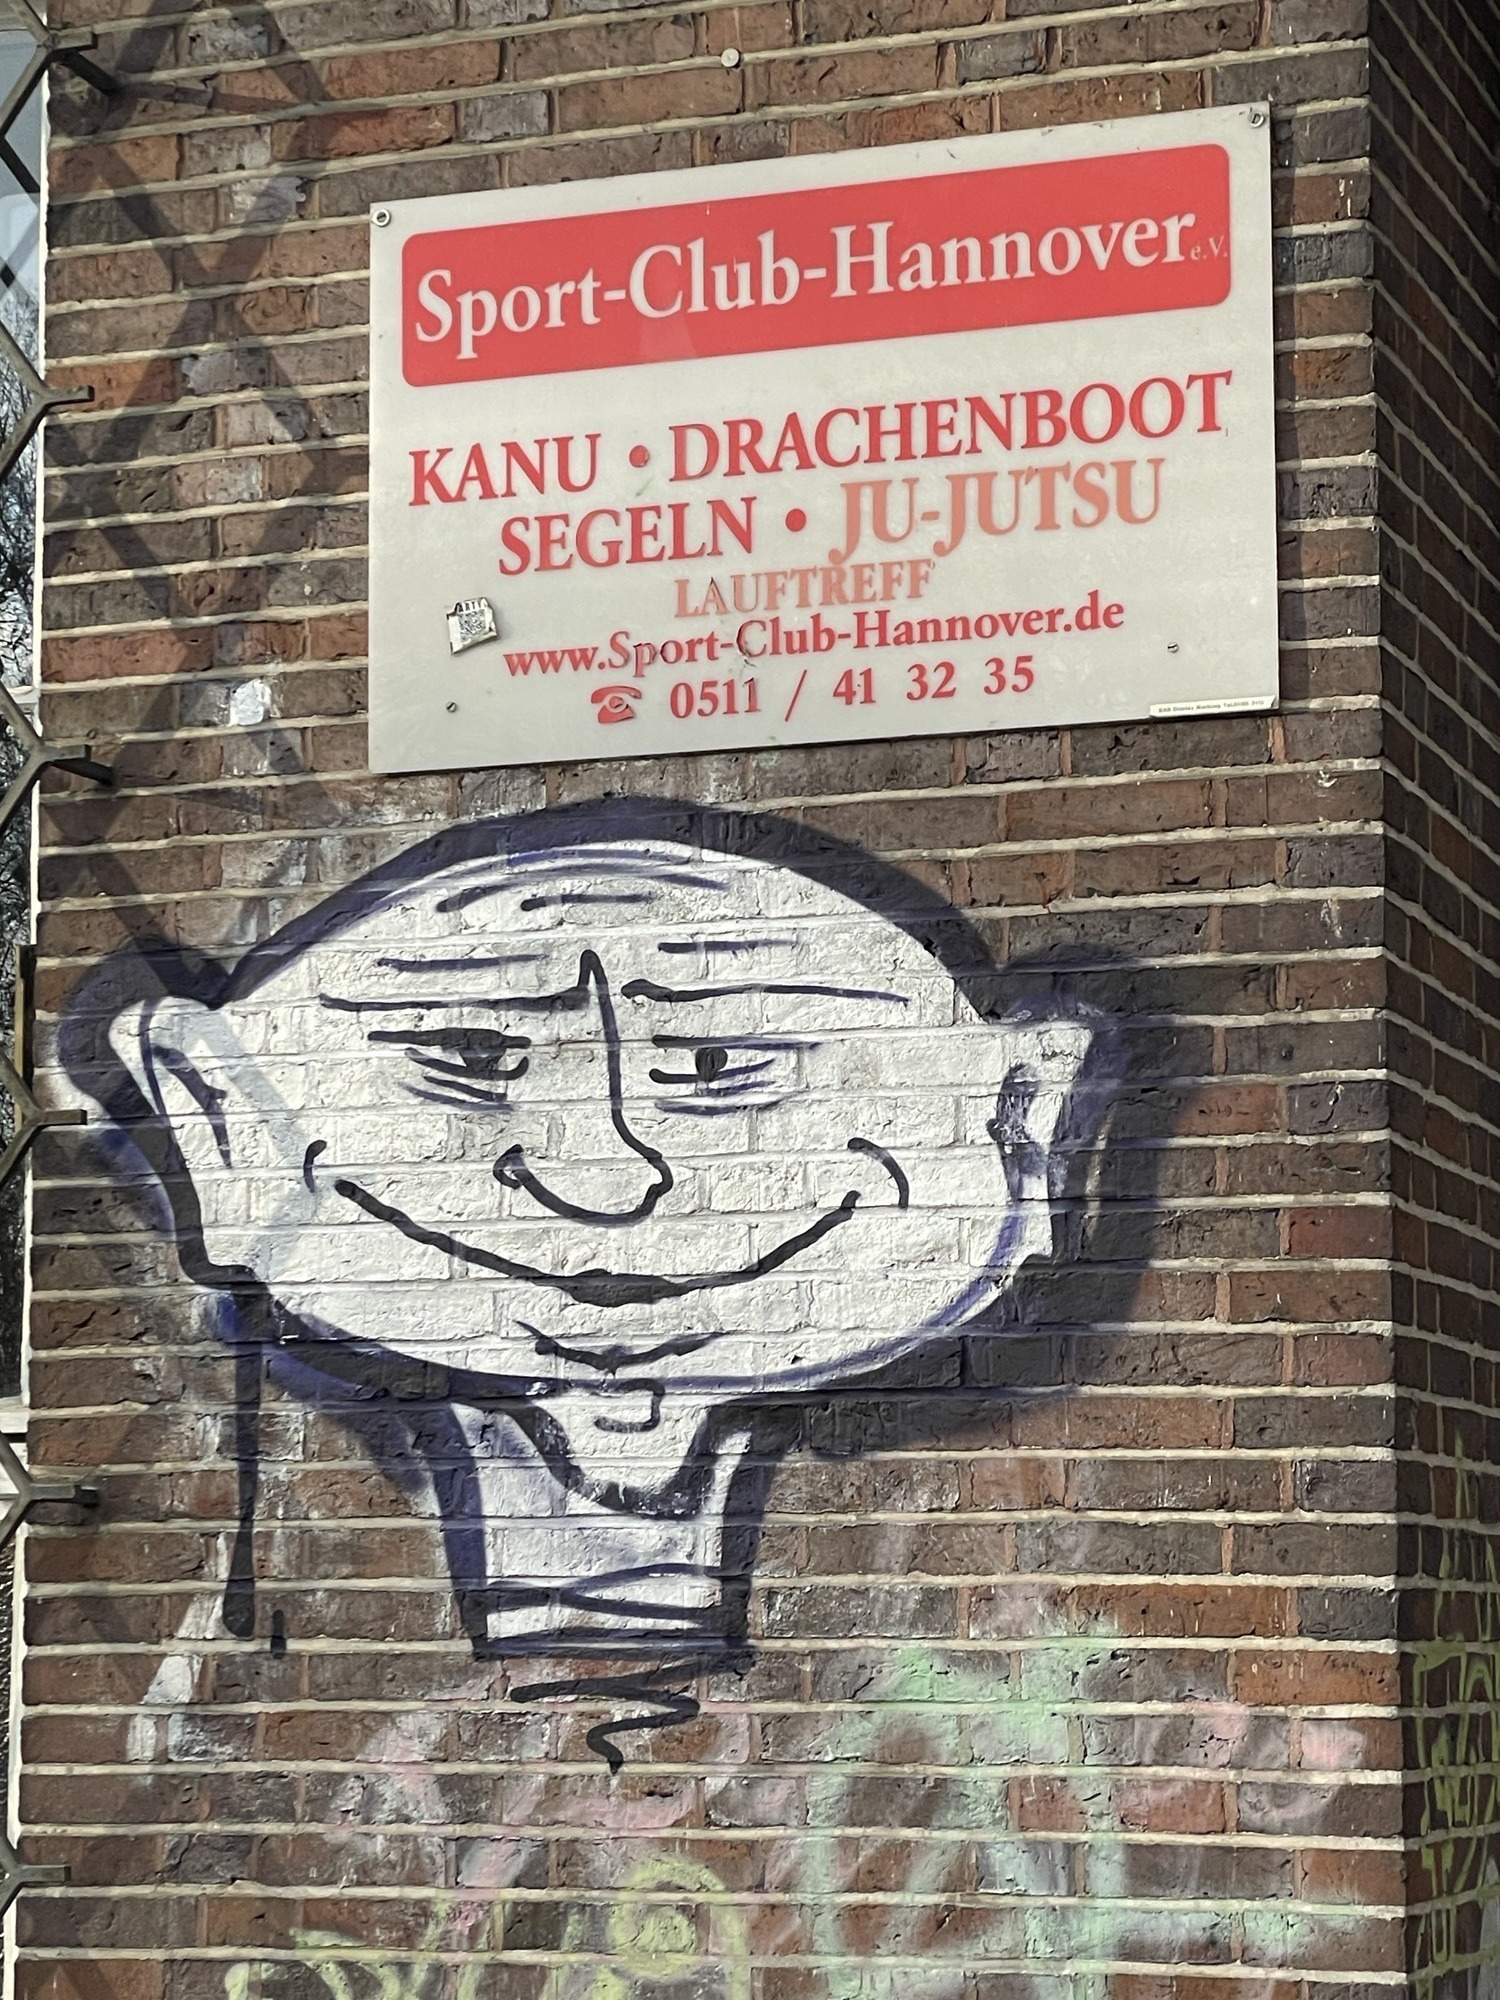 Schild des Sport-Club-Hannover an einer dunklen Ziegelstandwand mit asiatisch anmutenden Graffitikopf darunter.